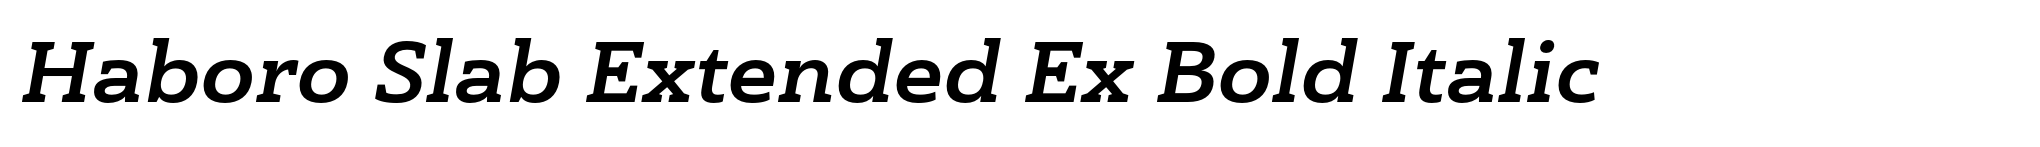 Haboro Slab Extended Ex Bold Italic image